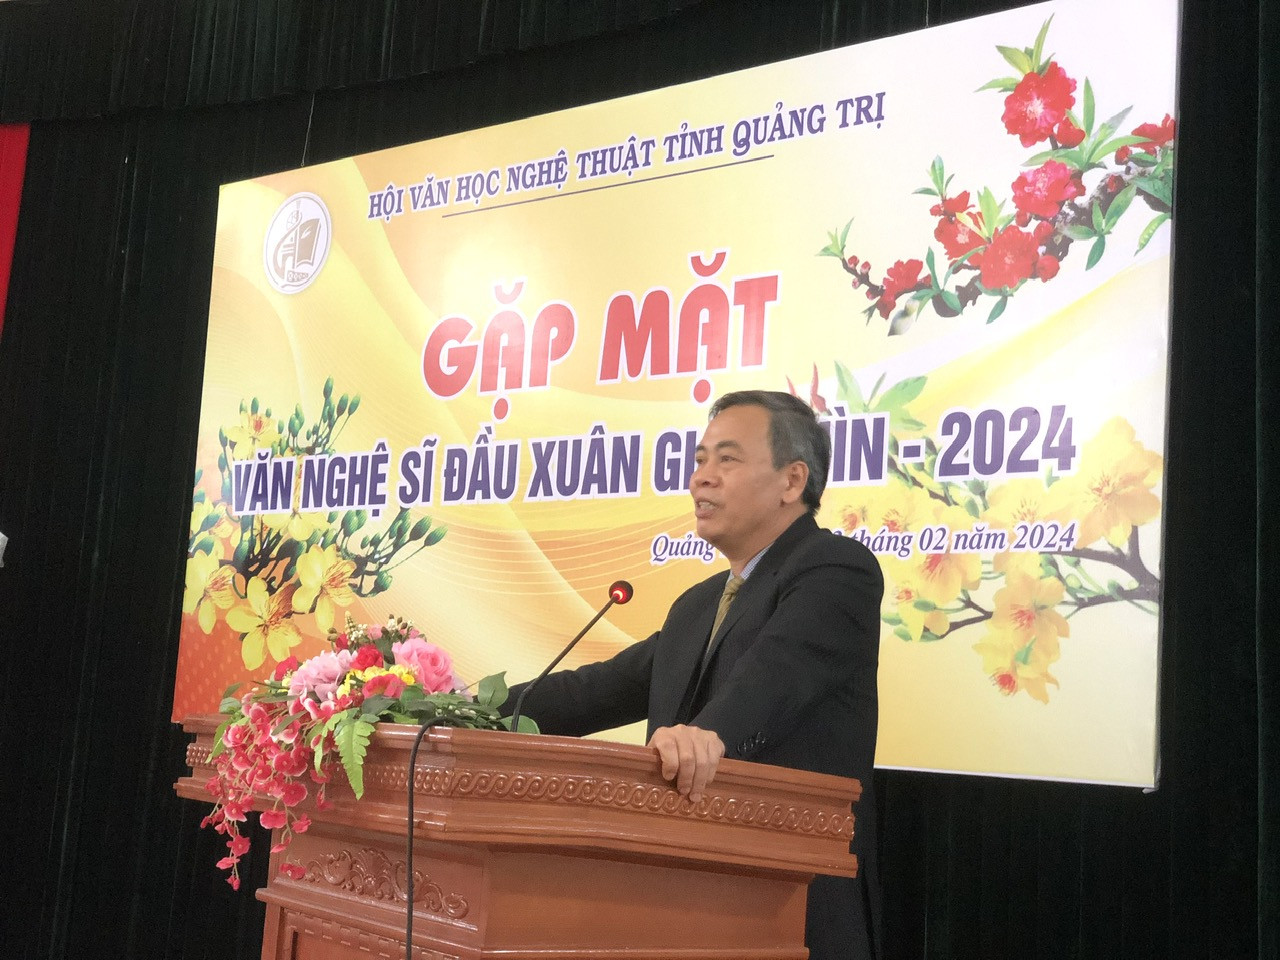 Phó Bí thư Thường trực Tỉnh ủy, Chủ tịch HĐND tỉnh Nguyễn Đăng Quang phát biểu tại buổi gặp mặt văn nghệ sĩ đầu xuân - Ảnh: C.N